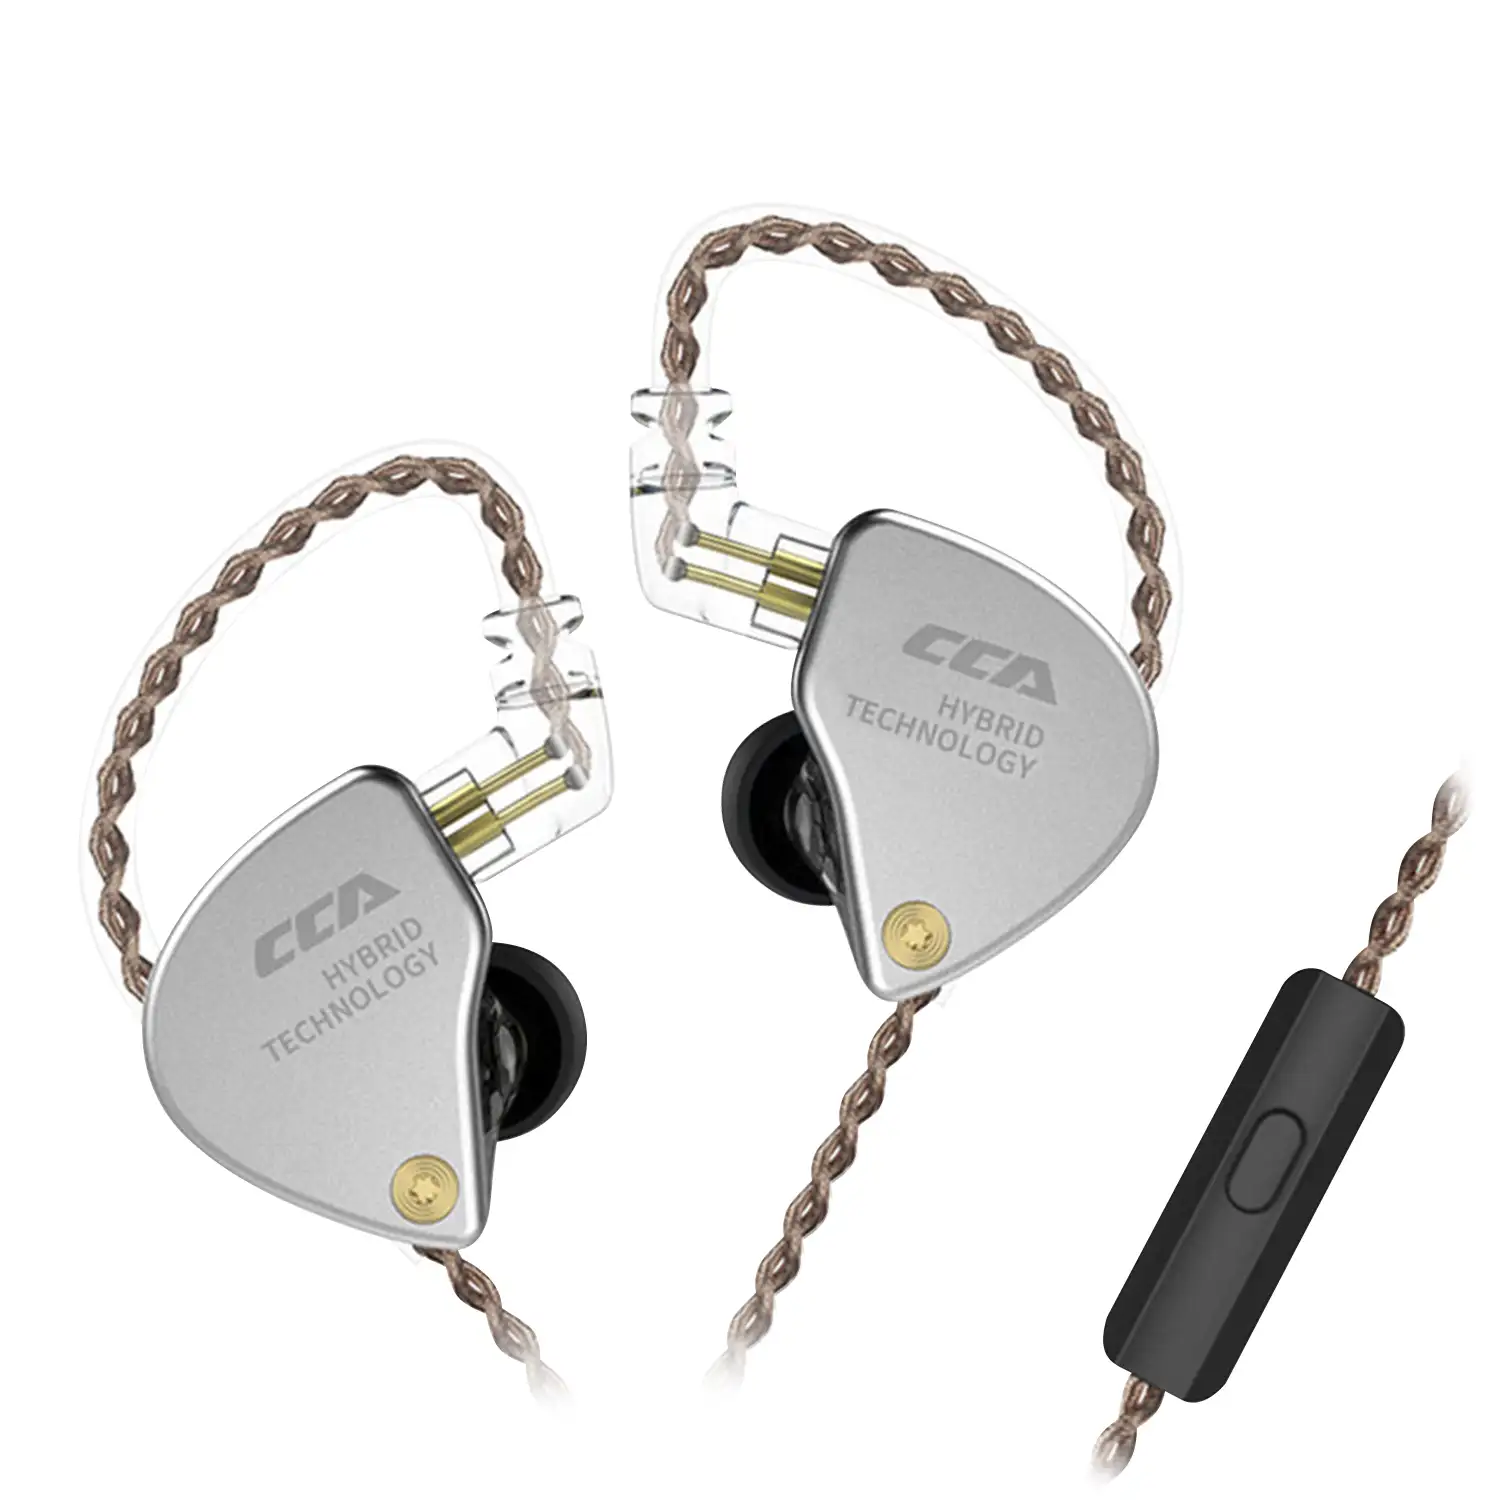 Auriculares híbridos in-ear CCA CA4 de alta fidelidad. 1 controlador de armadura balanceada + 1 controlador dinámico. Cable con micro, conexión jack 3,5mm.